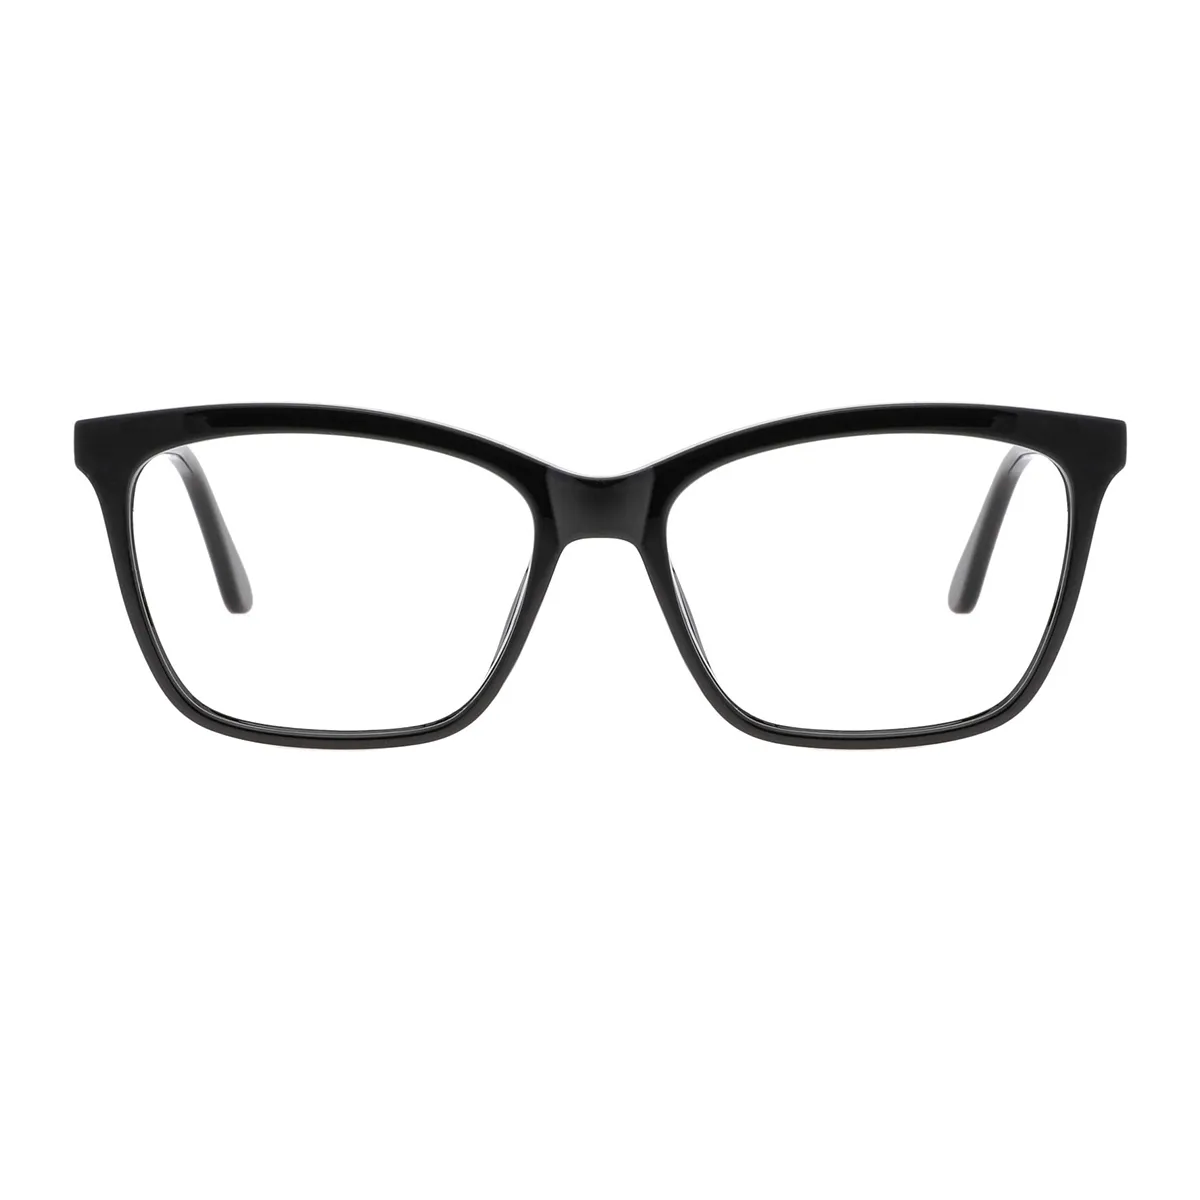 Fashion Rectangle Black  Eyeglasses for Women & Men